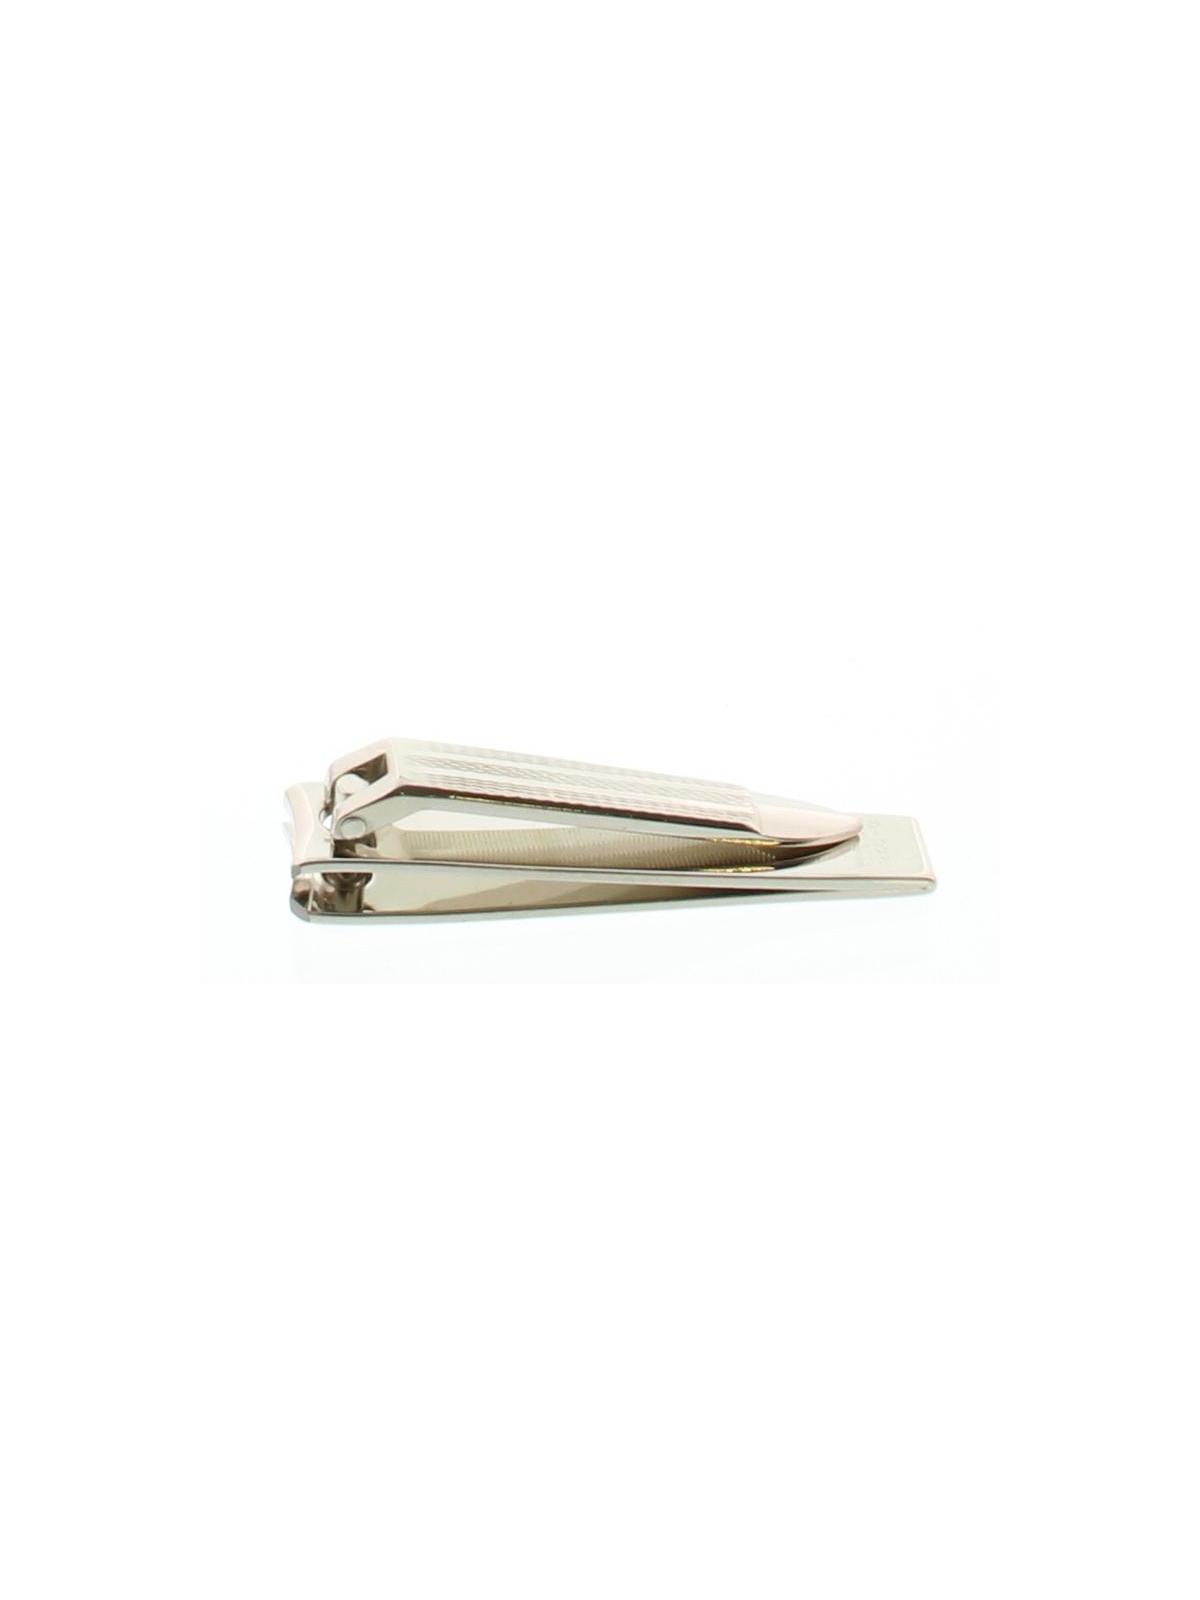 Nagelknipper 6 cm nikkel 245-6/71